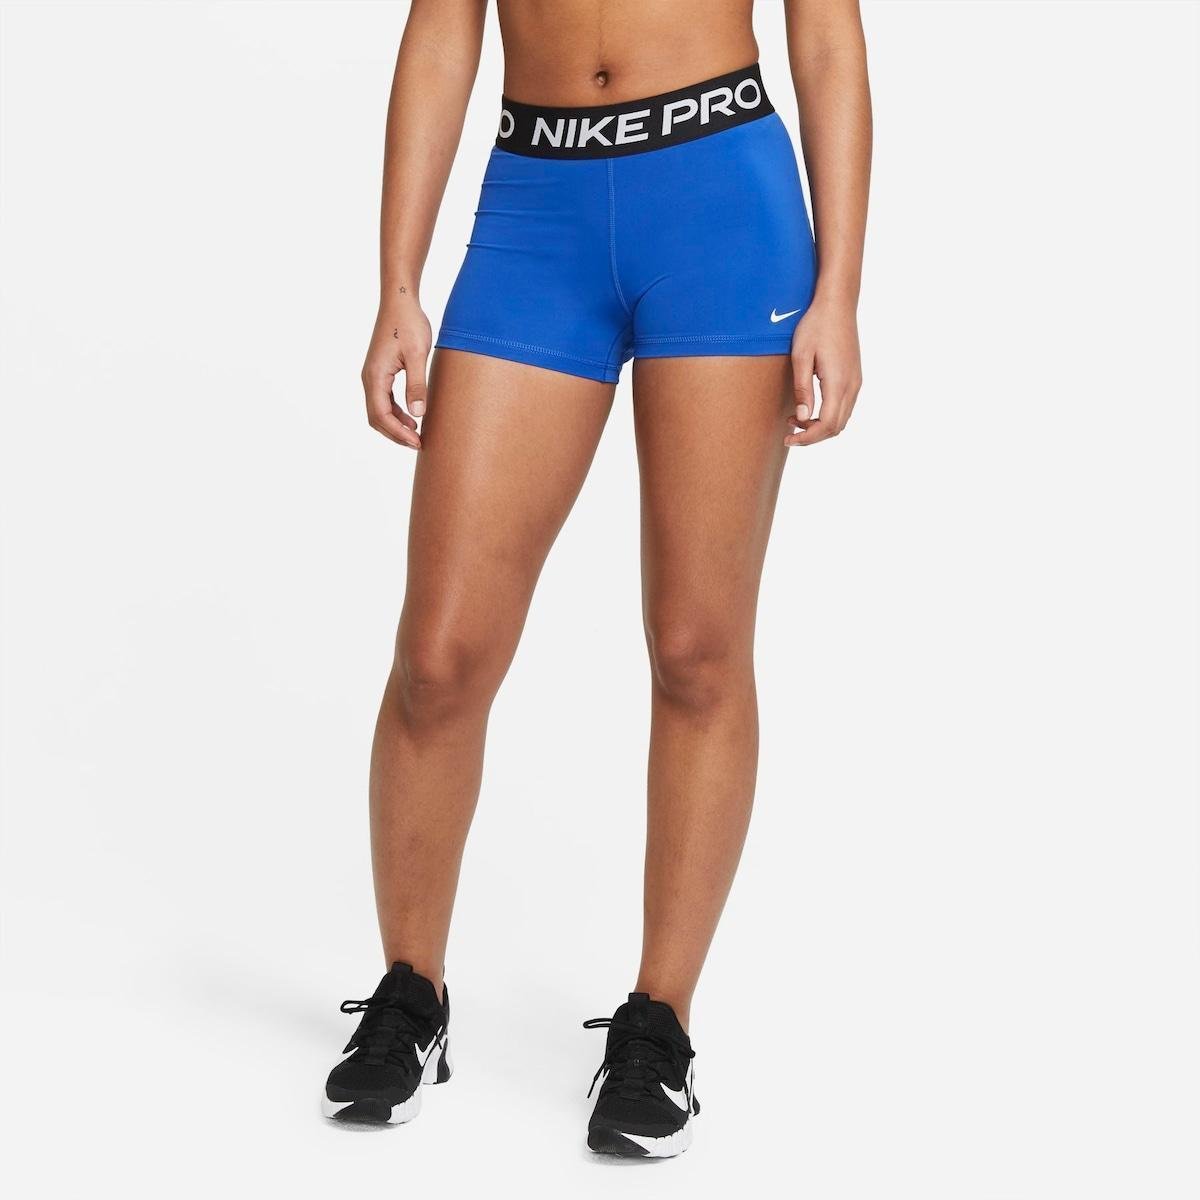 Shorts Nike Pro Feminino - Azul